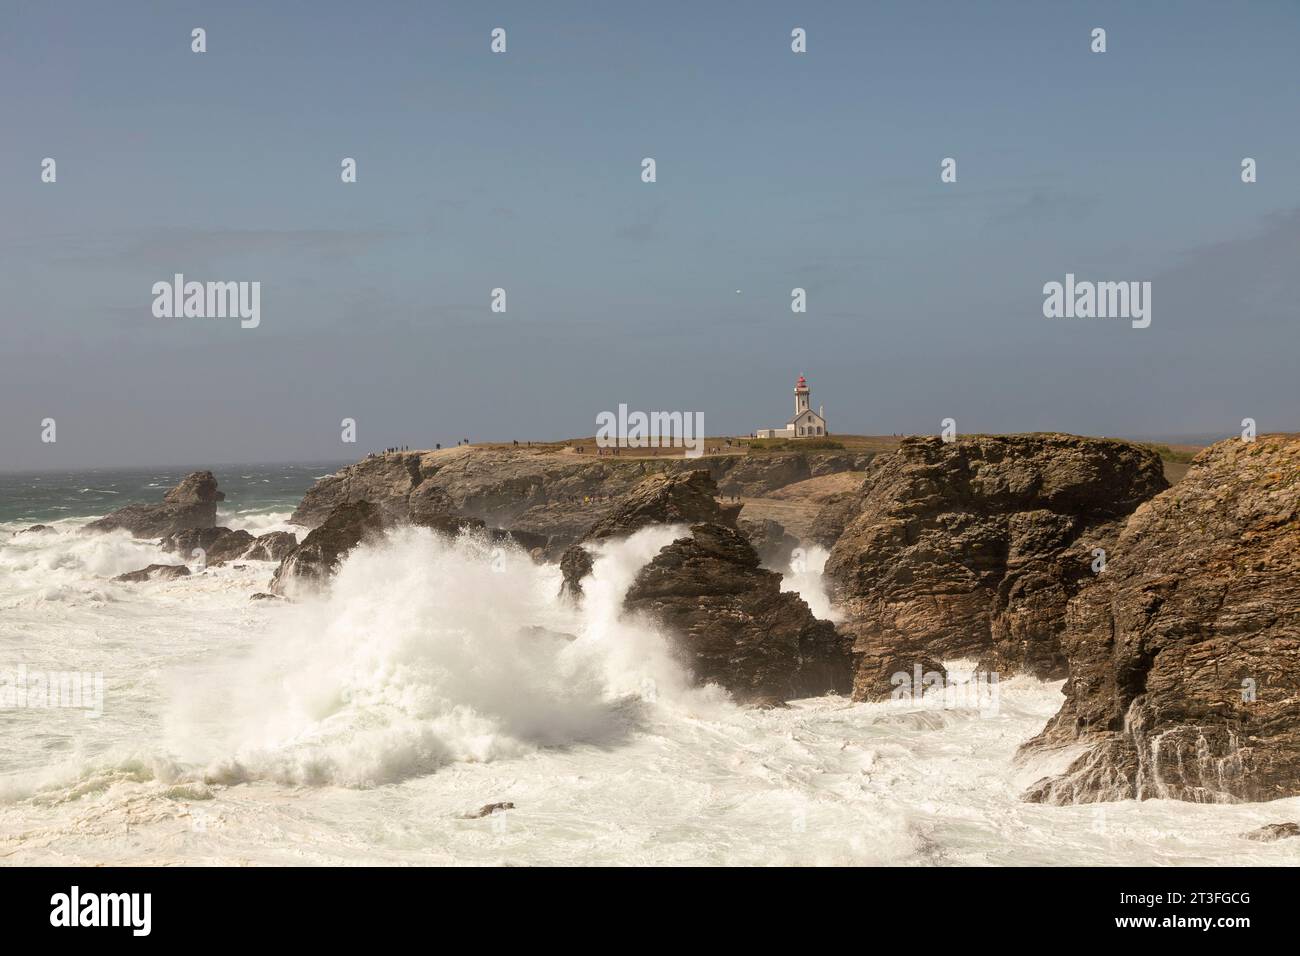 France, Morbihan, Belle-Ile-en-Mer, Sauzon, Pointe des Poulains, poulains lighthouse in the background Stock Photo